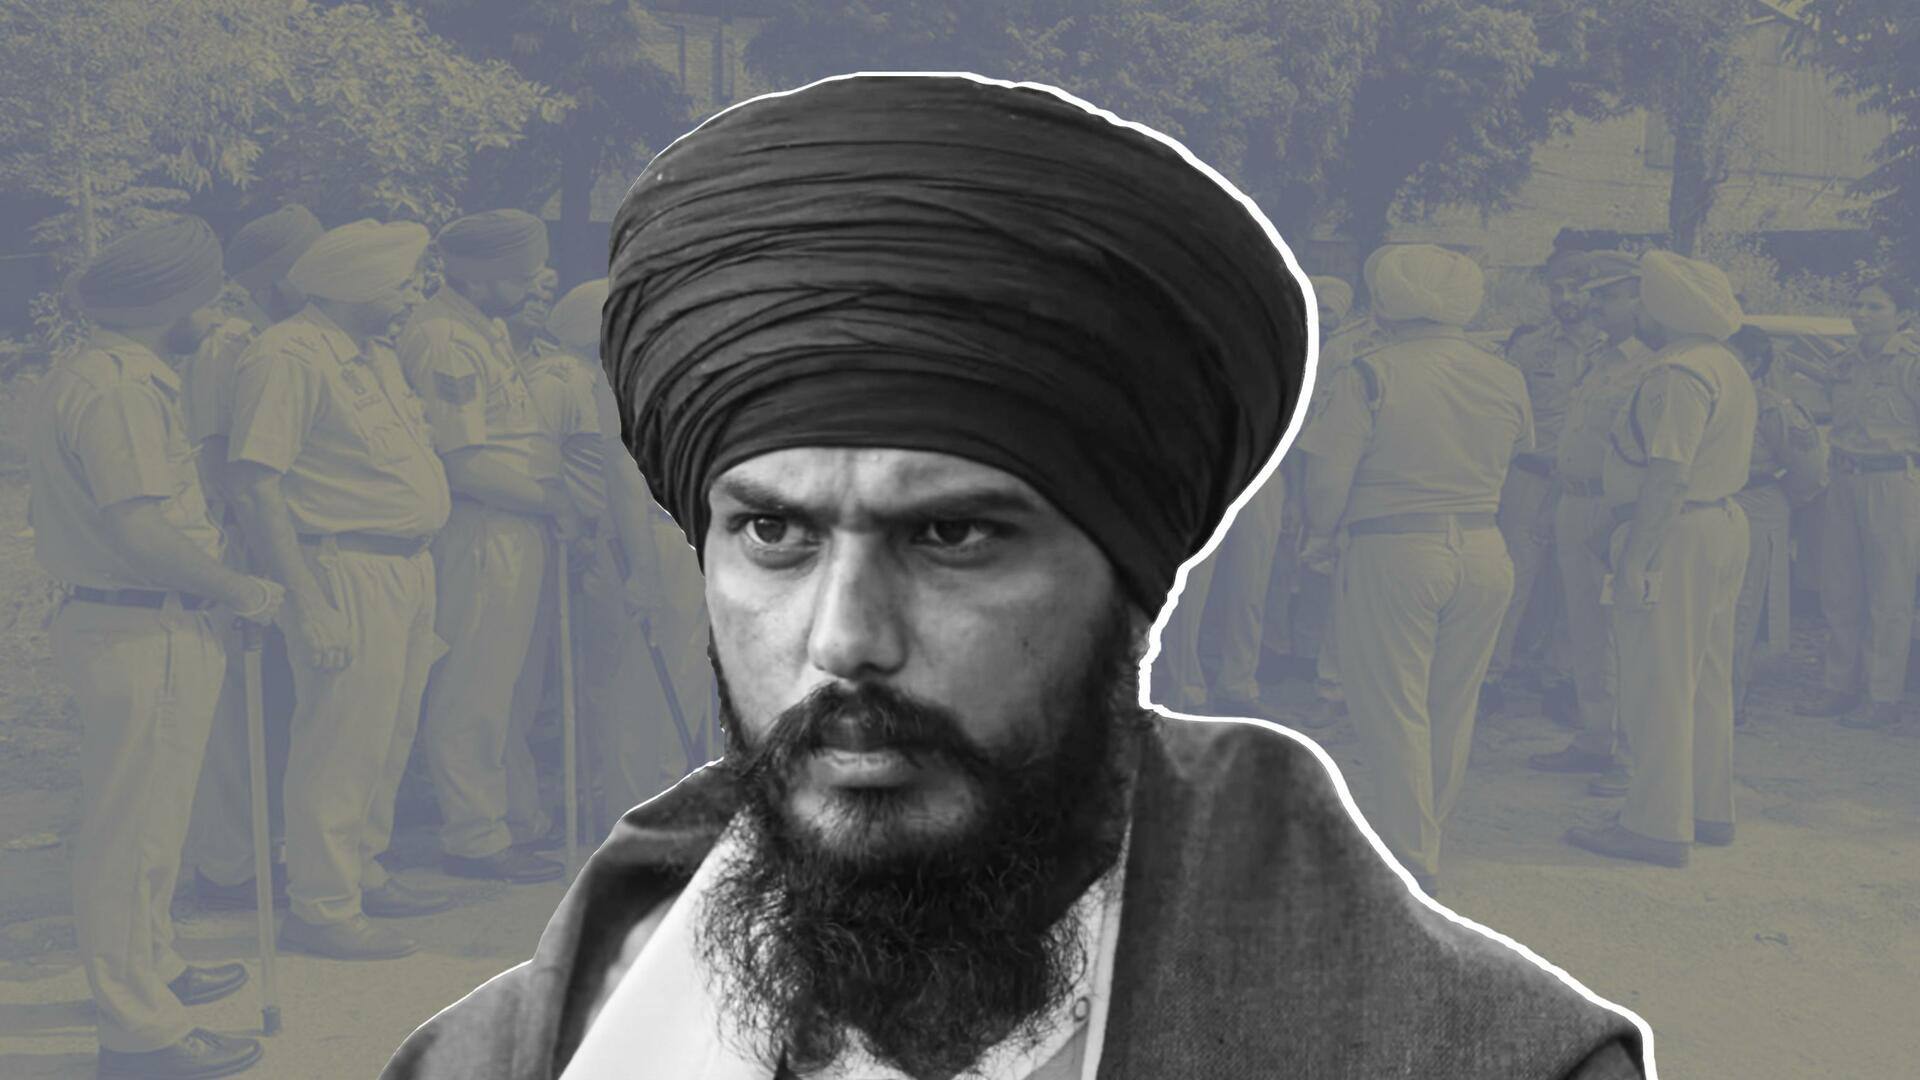 अमृतपाल सिंह को भगोड़ा घोषित किया गया, पंजाब में 20 मार्च तक इंटरनेट बंद